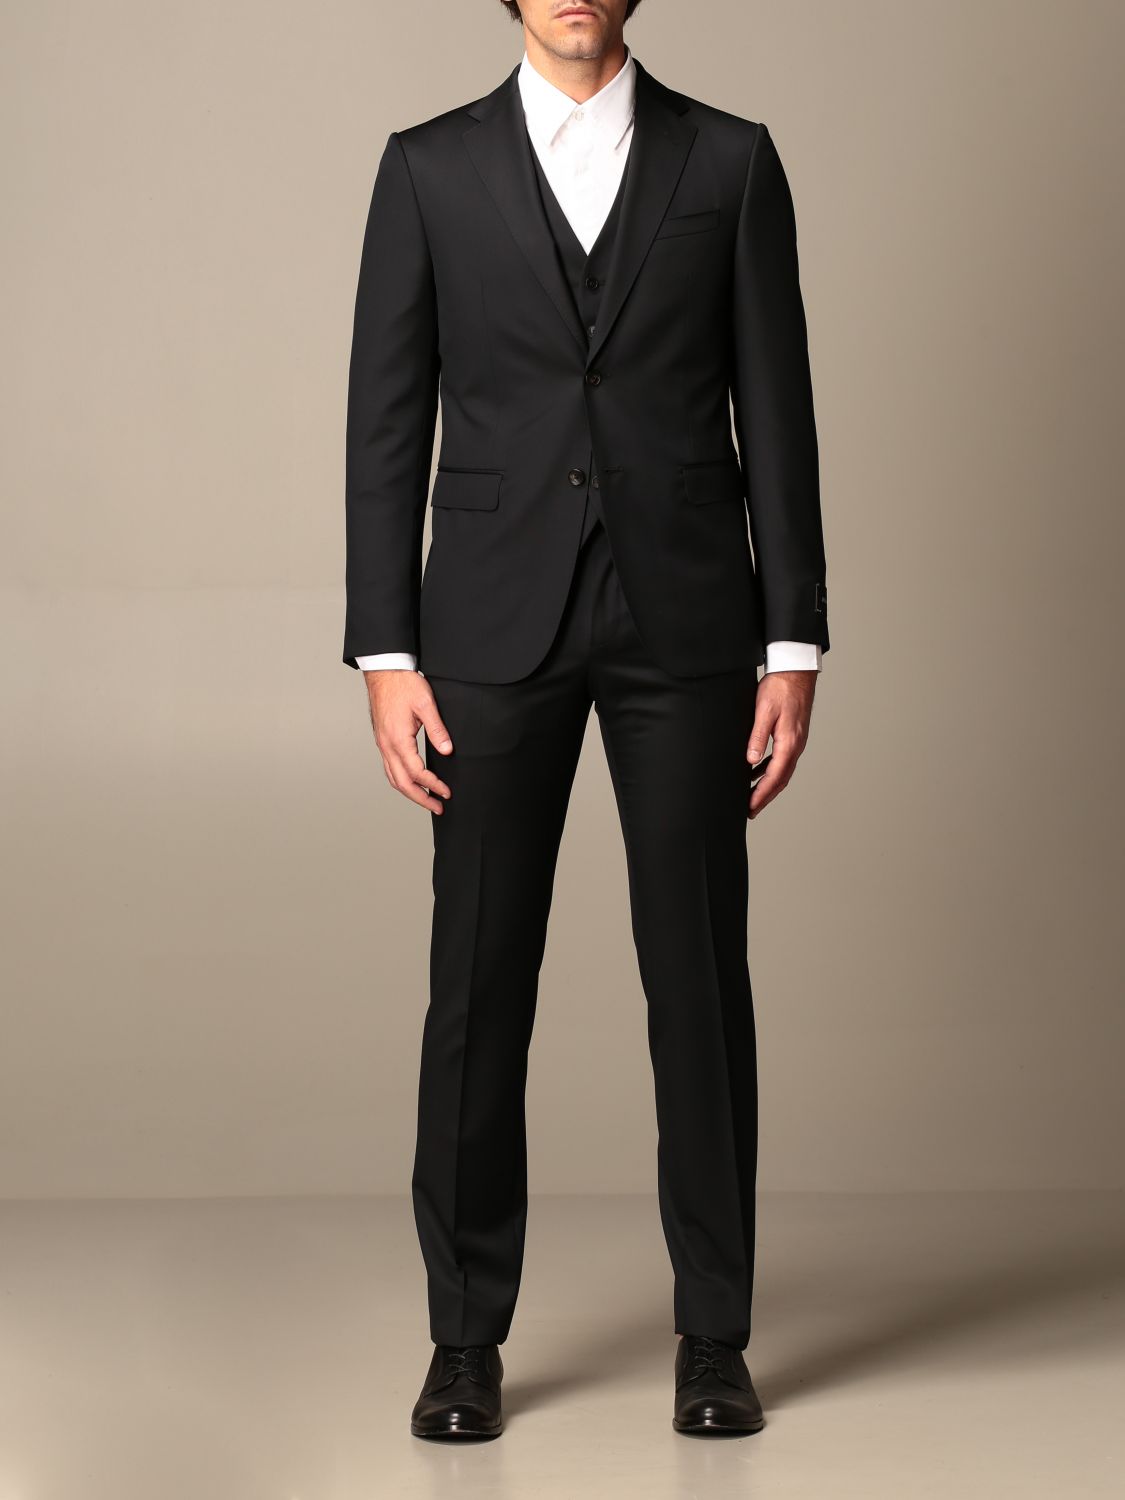 Z ZEGNA: wool suit 240 g drop 7 - Black | Z Zegna suit 38QCGN 924 ...